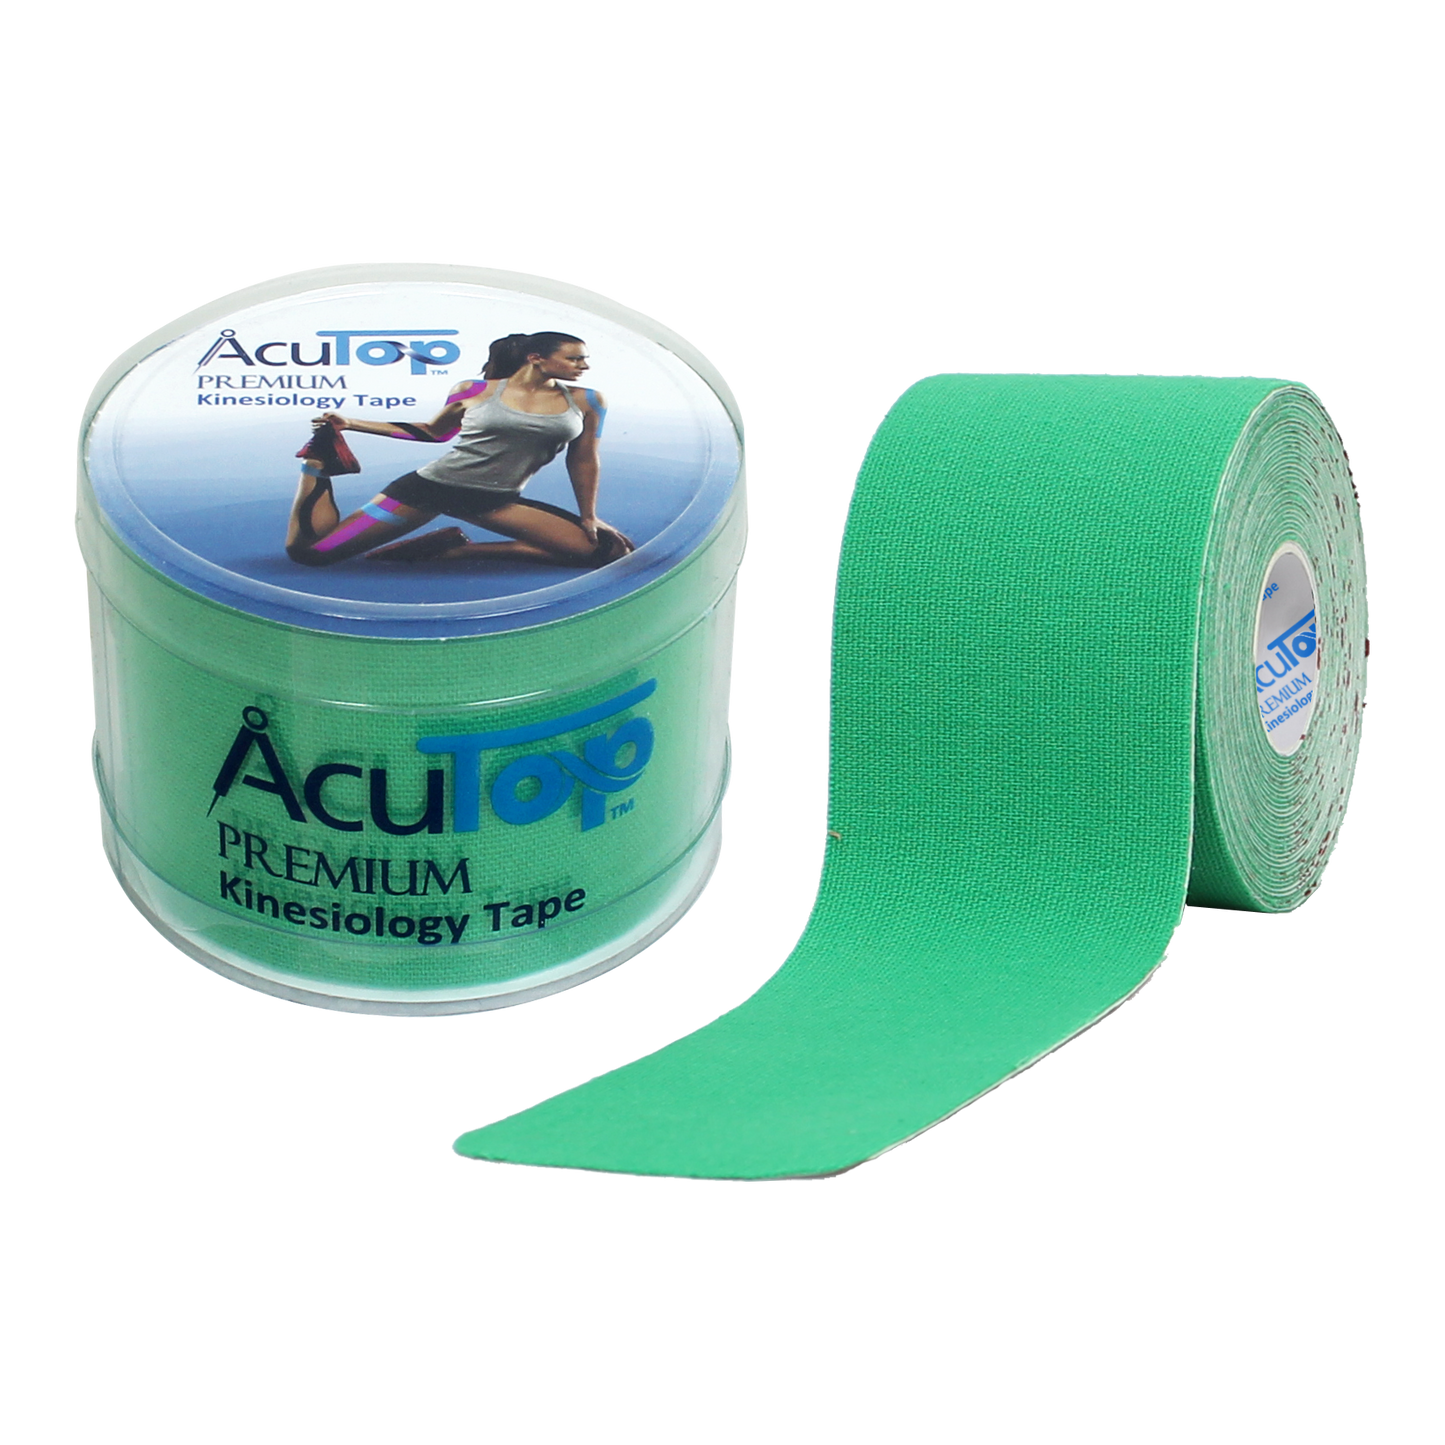 Acutop - Premium Kinesiologie Tape - Groen - 5cm x 5m - Intertaping.nl